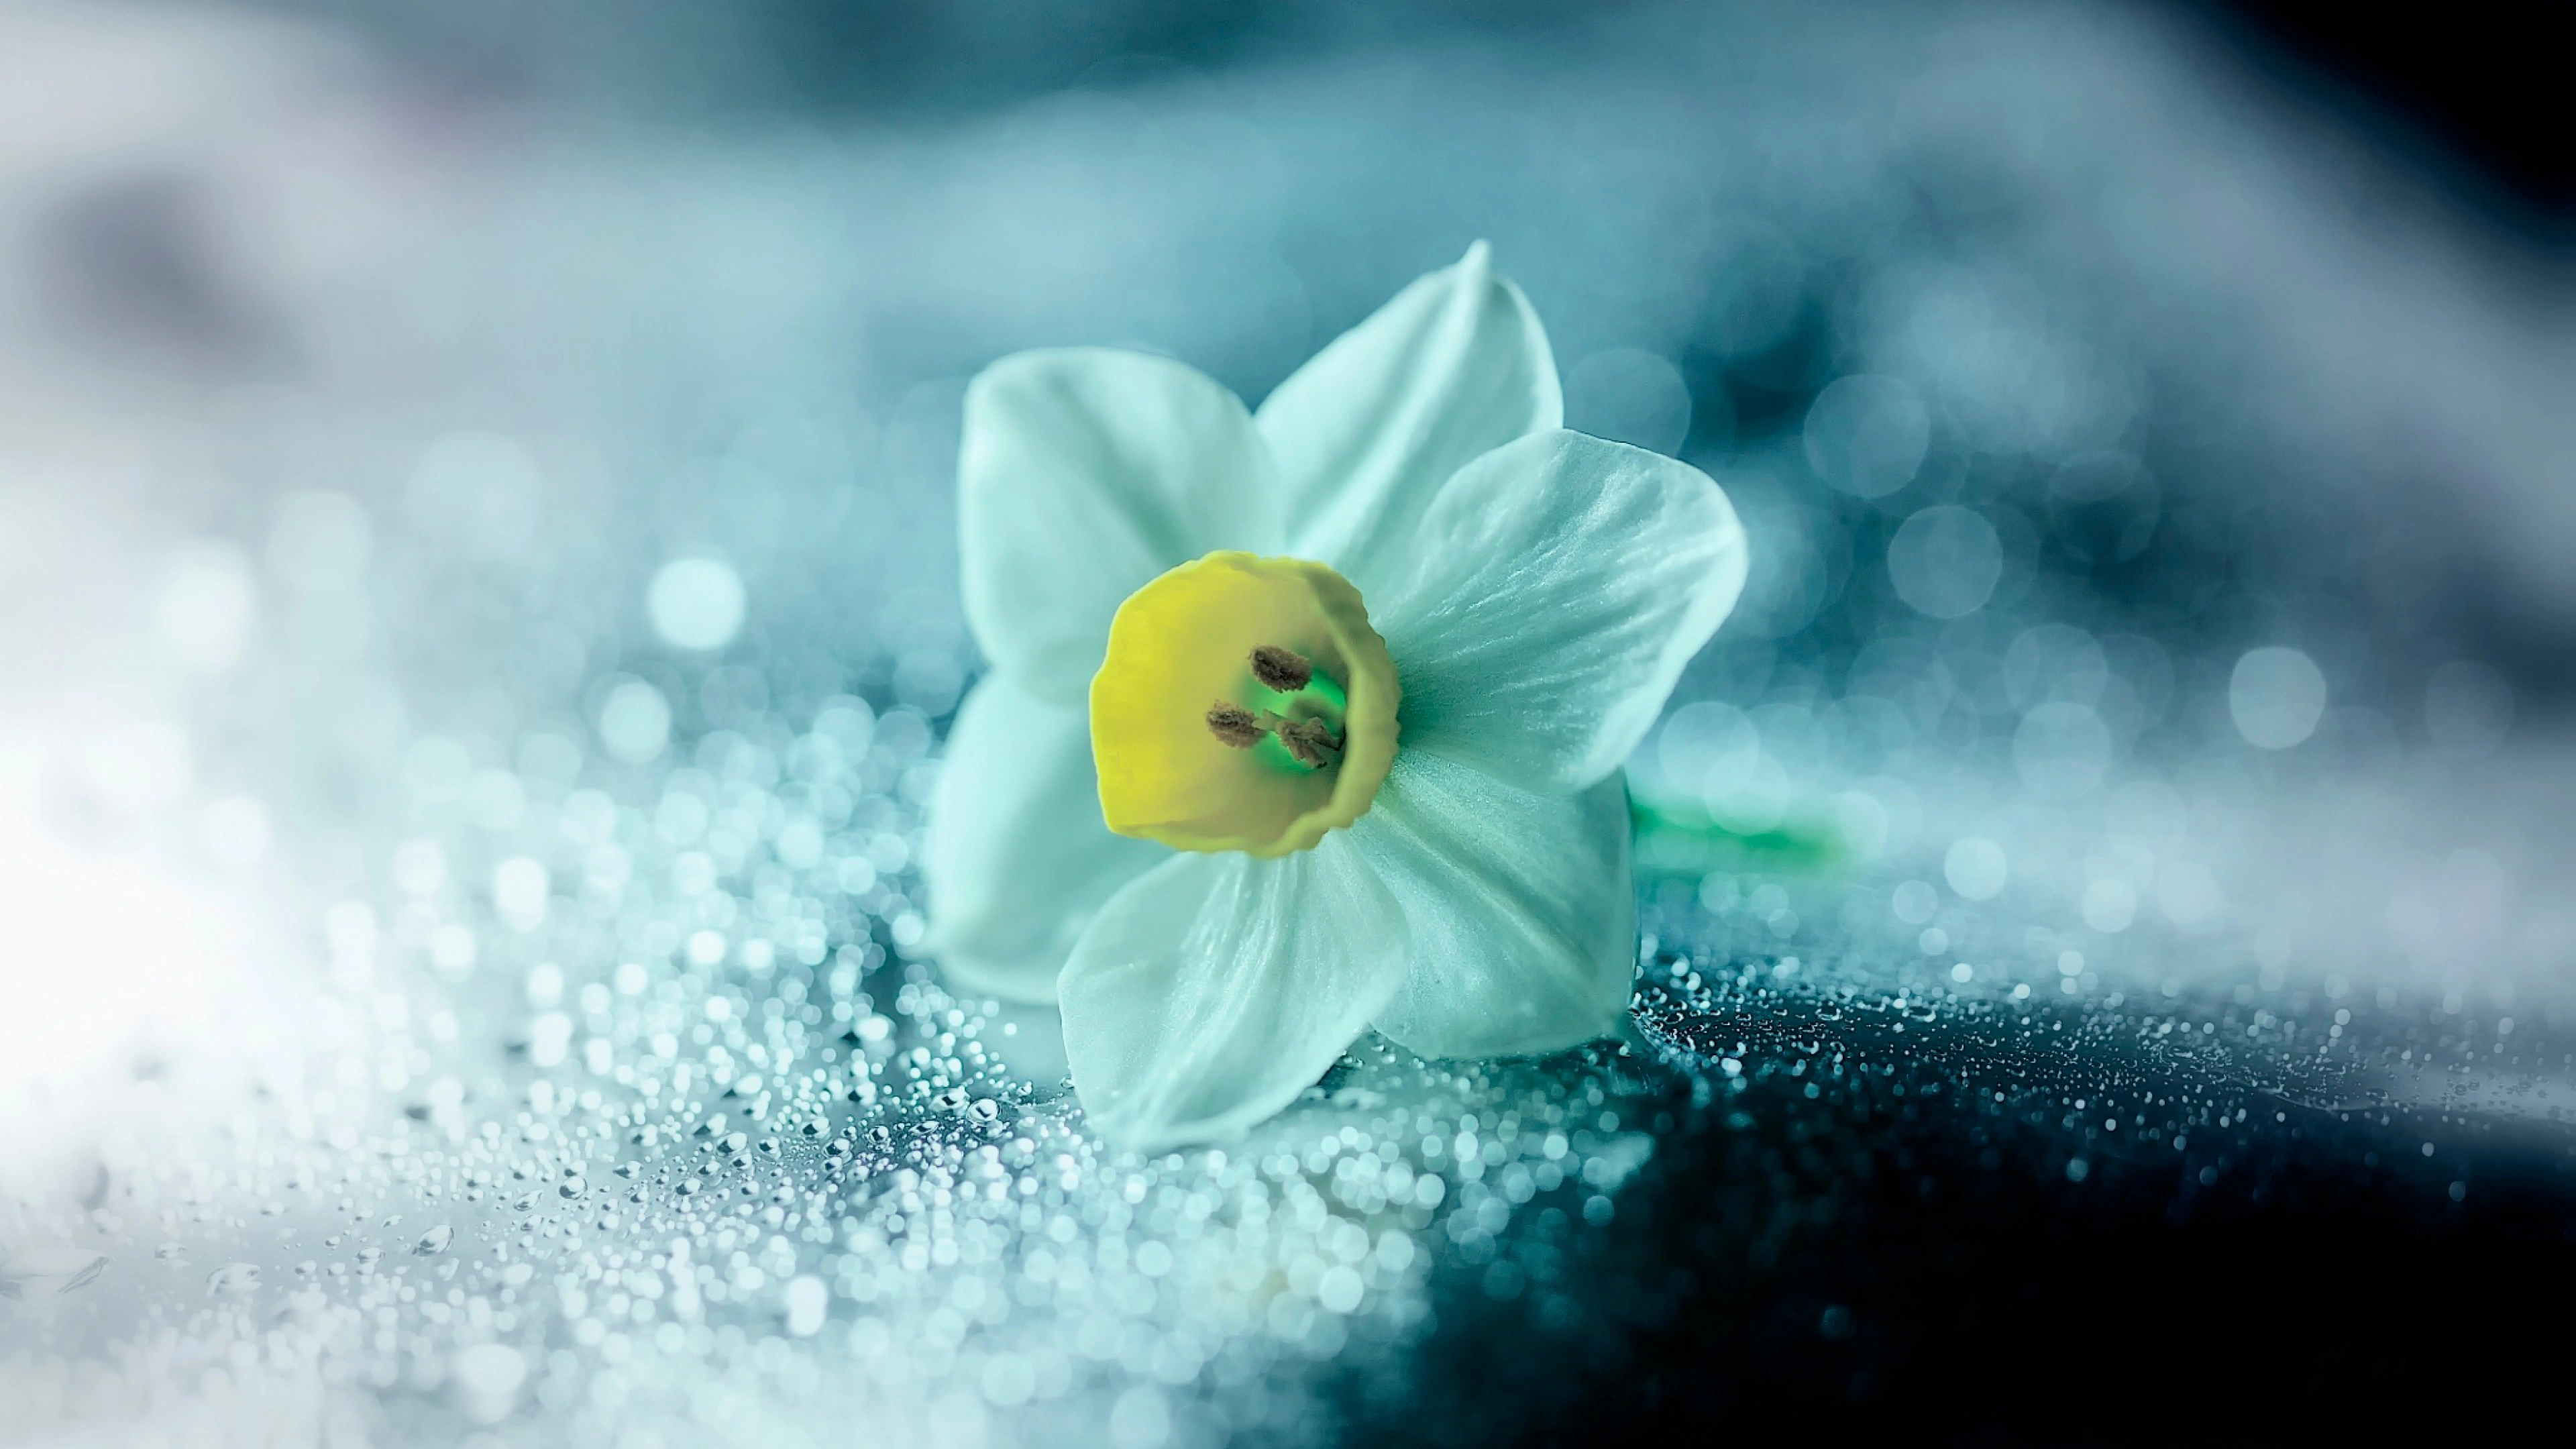 daffodil flower petals drops 4k 1695902017